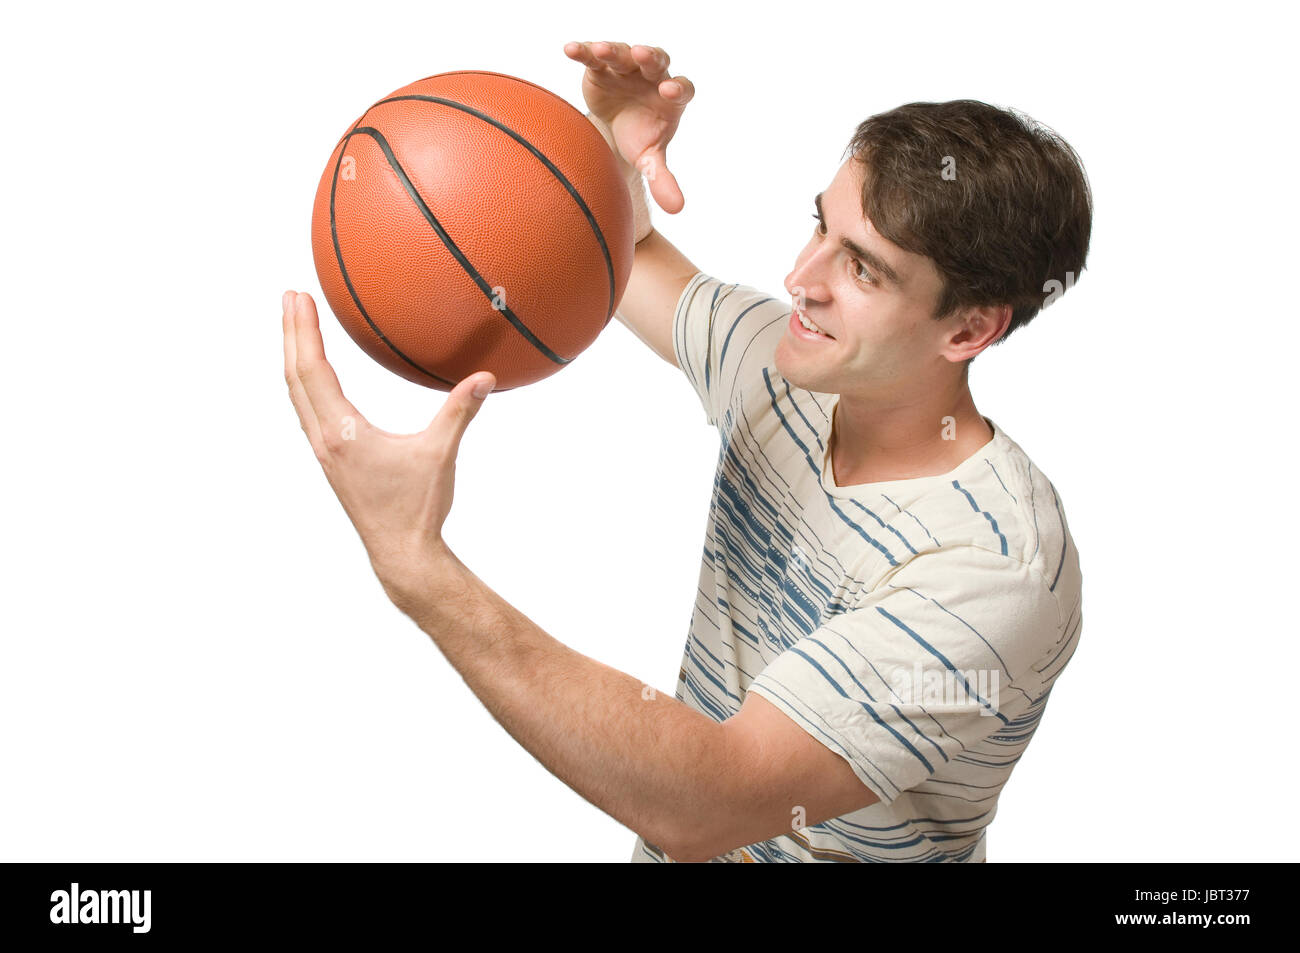 Oberkörper-Ansicht eines jungen Mannes im gestreiften T-Shirt weissen vor der Hintergrund und zufrieden jonglierend Basket-ball balle blickend auf den Banque D'Images